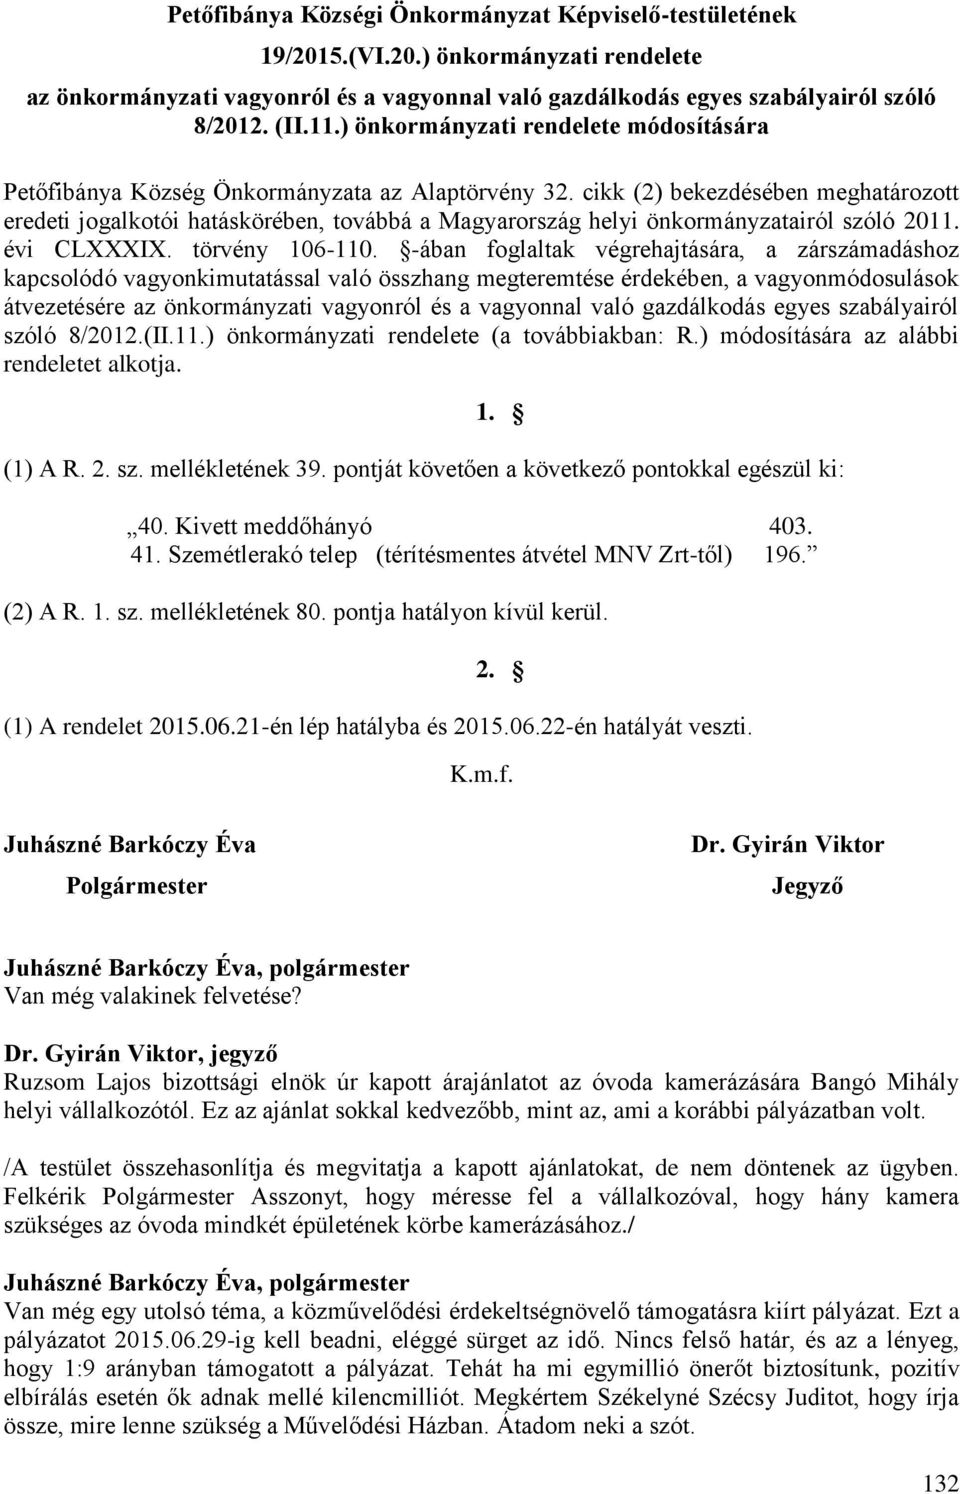 cikk (2) bekezdésében meghatározott eredeti jogalkotói hatáskörében, továbbá a Magyarország helyi önkormányzatairól szóló 2011. évi CLXXXIX. törvény 106-110.